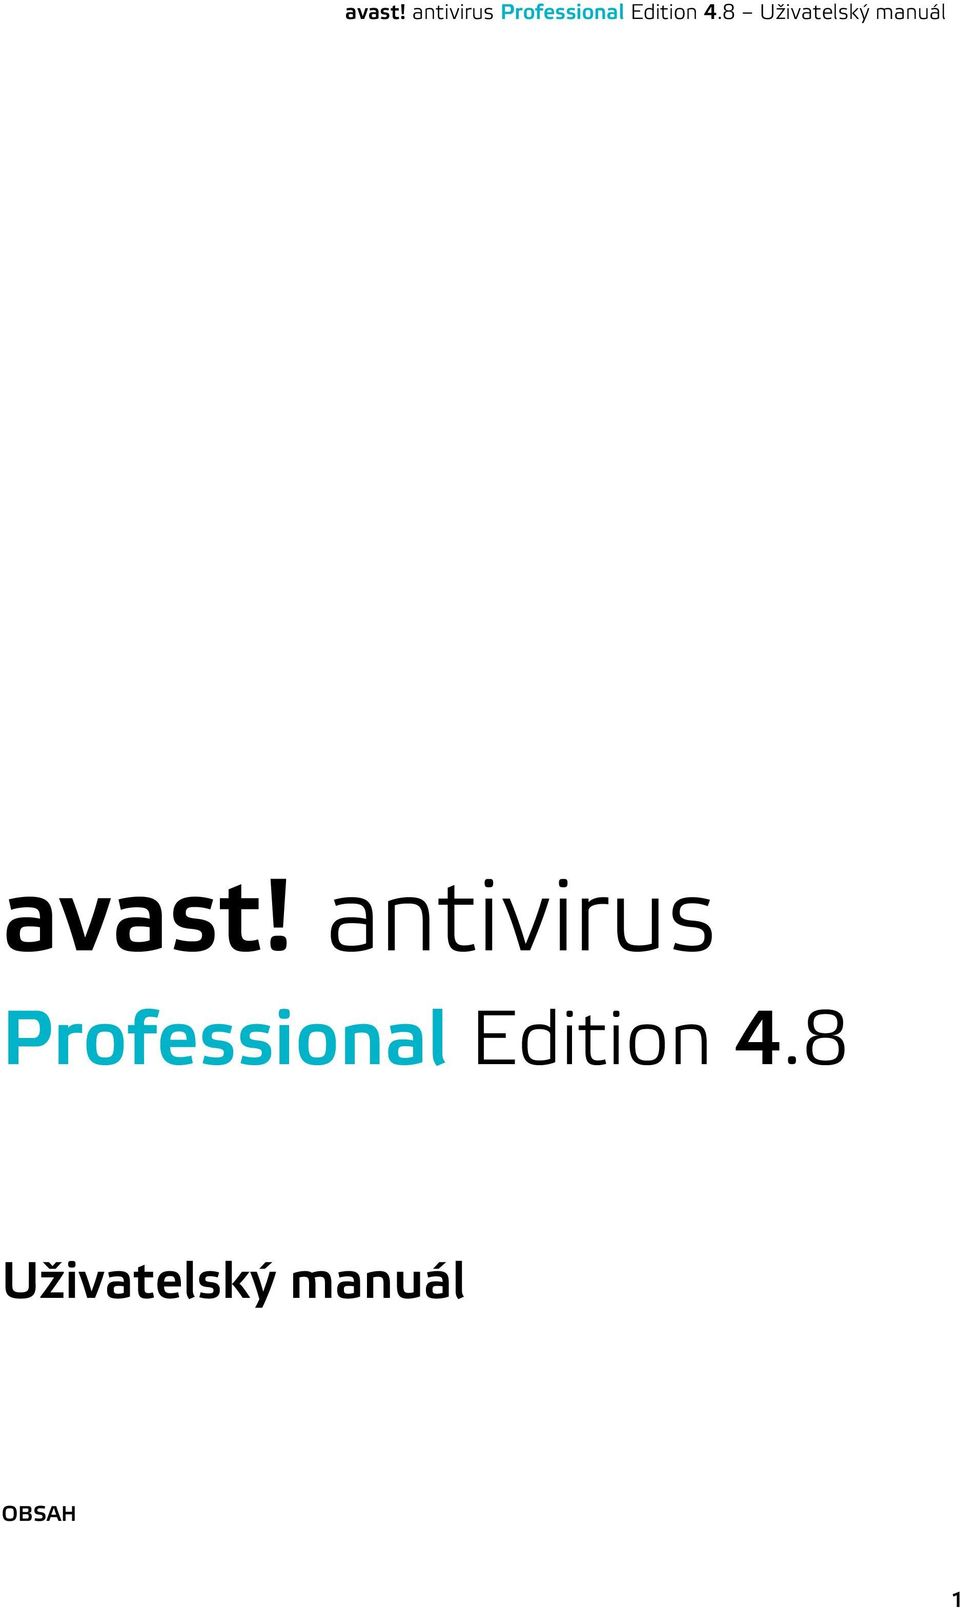 avast! antivirus Professional Edition 4.8 Uživatelský manuál - PDF Free  Download